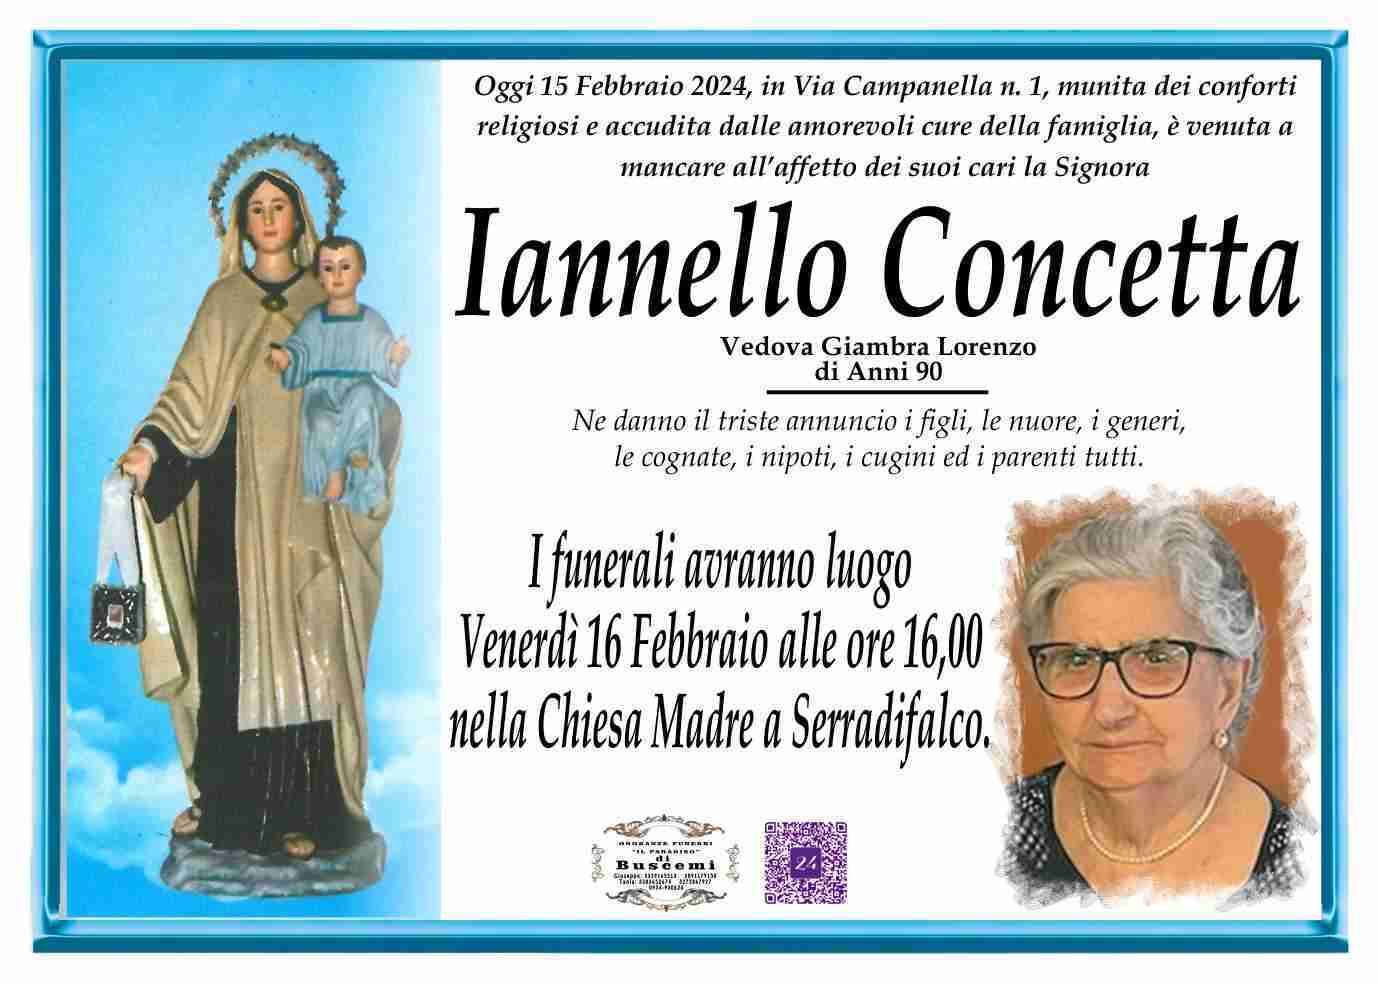 Iannello Concetta